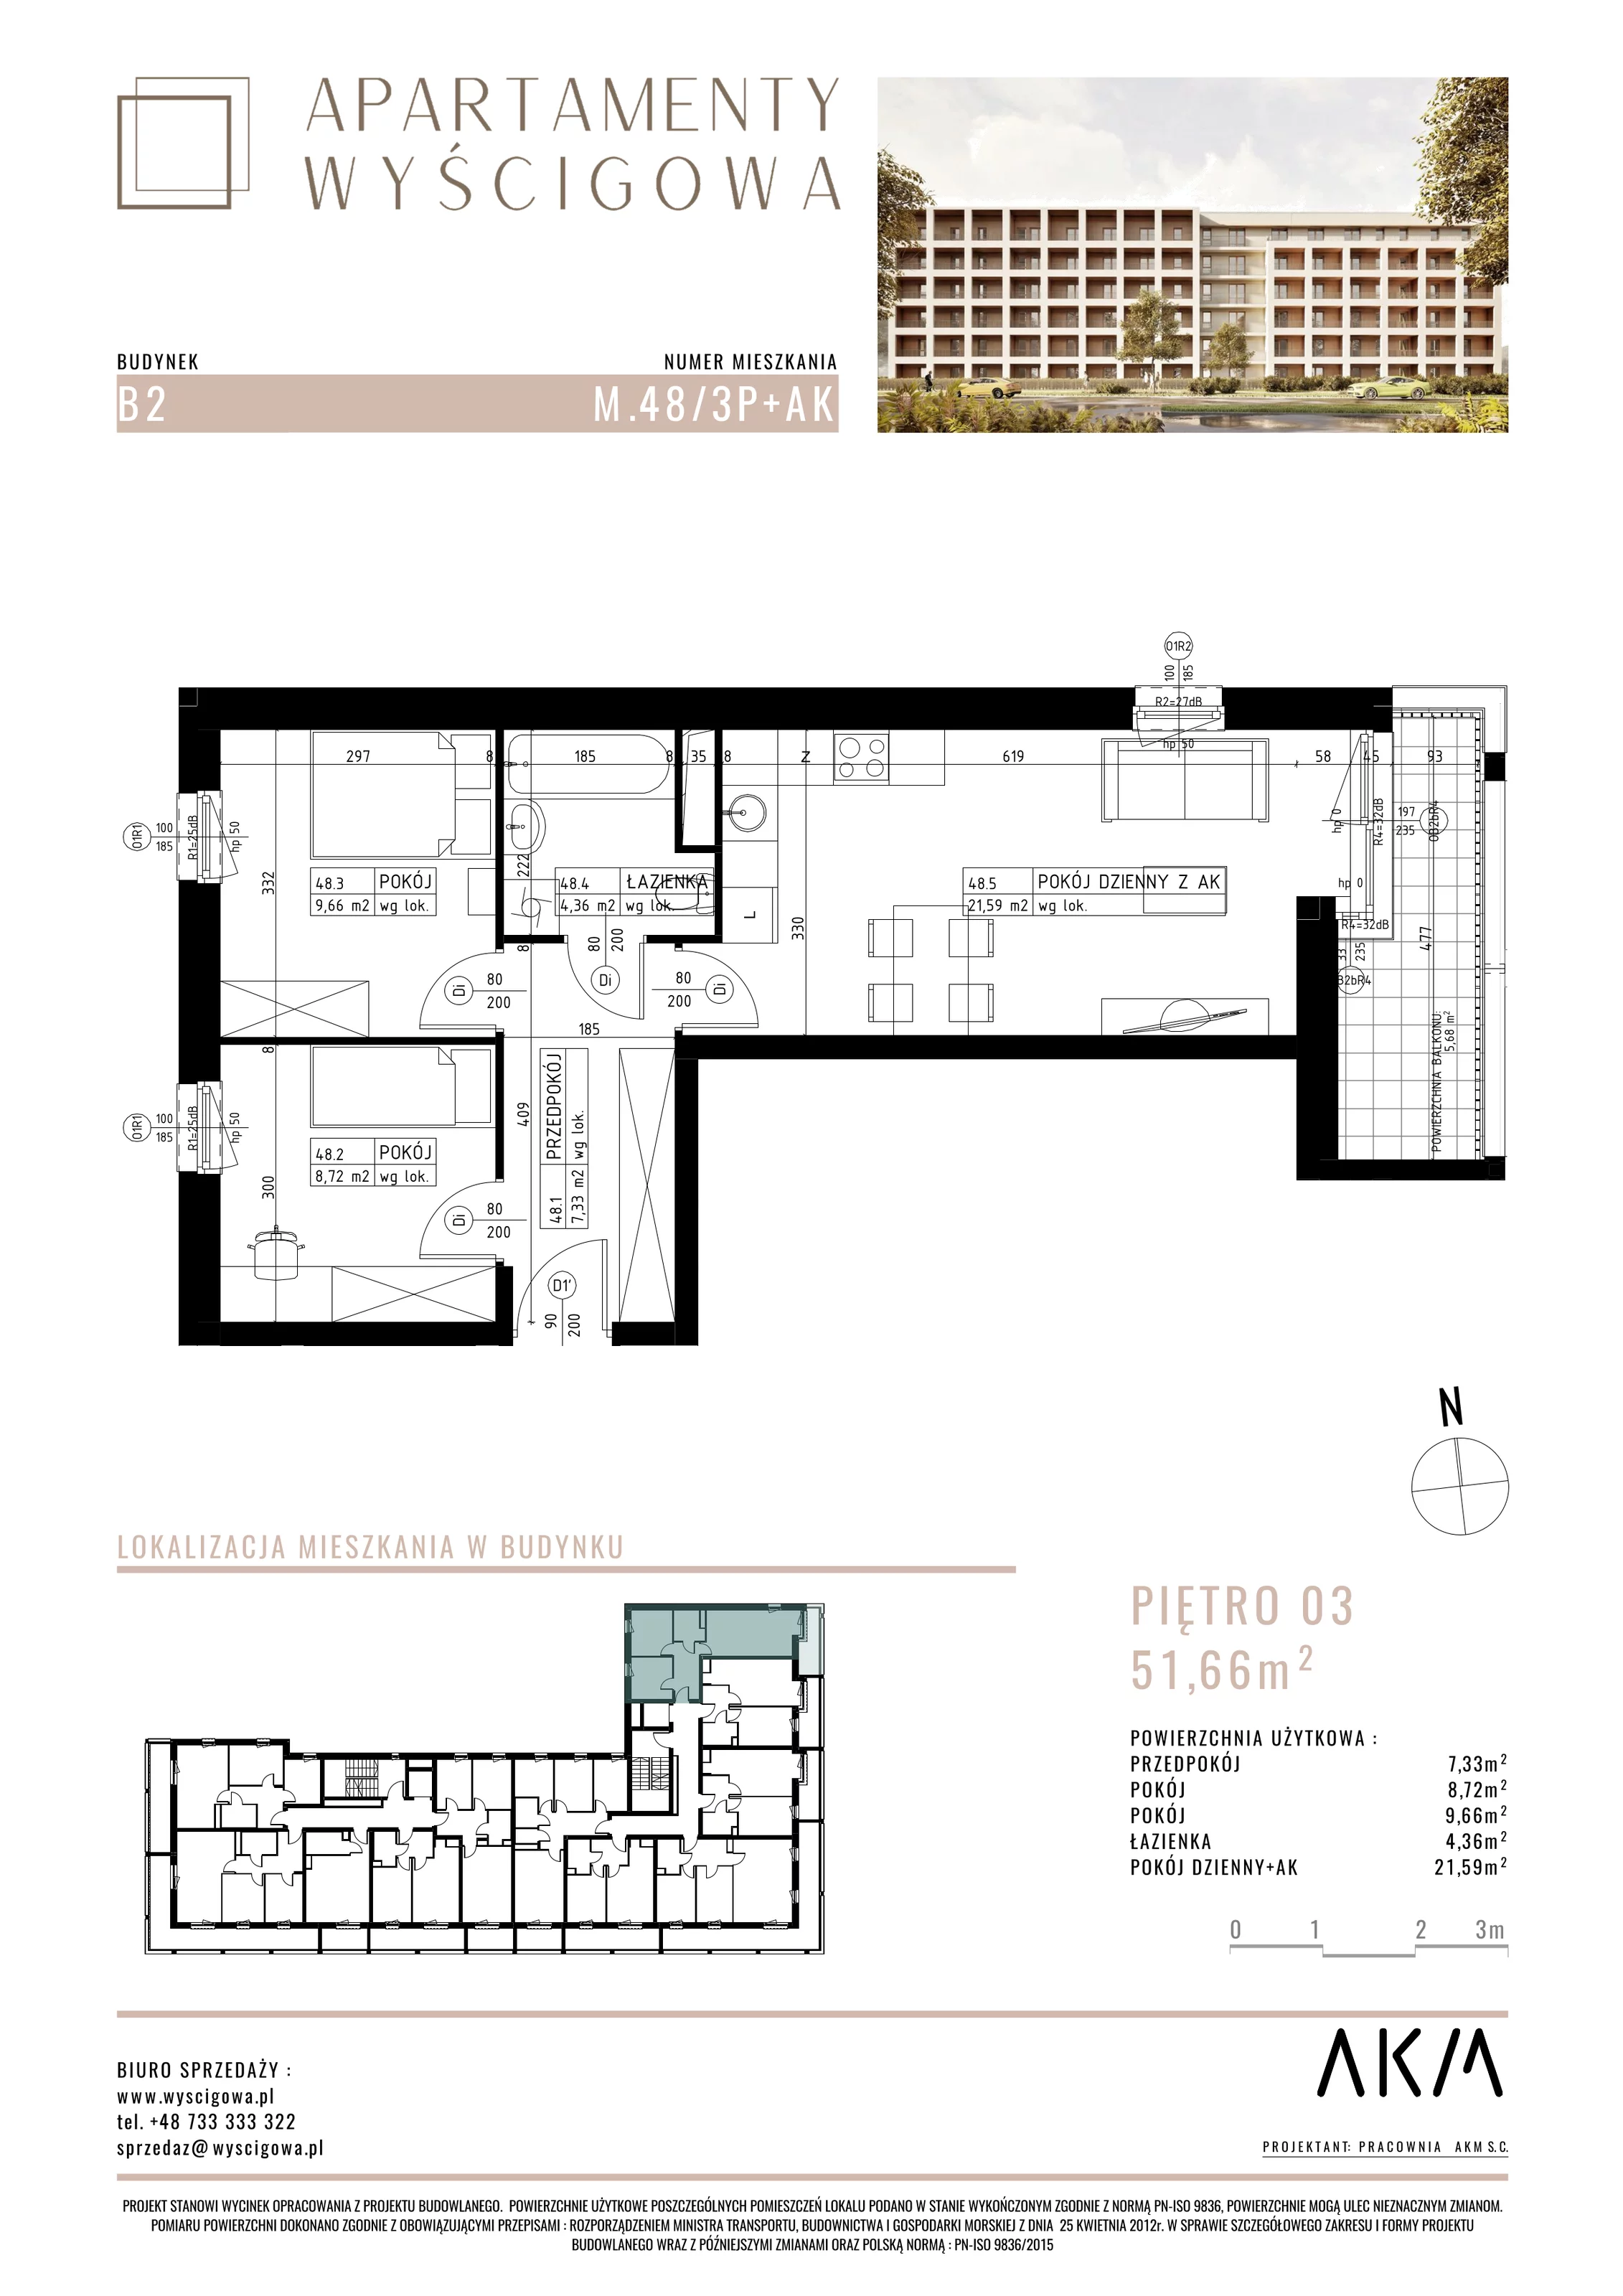 Mieszkanie 51,66 m², piętro 3, oferta nr B2.M48, Apartamenty Wyścigowa, Lublin, Dziesiąta, Dziesiąta, ul. Wyścigowa